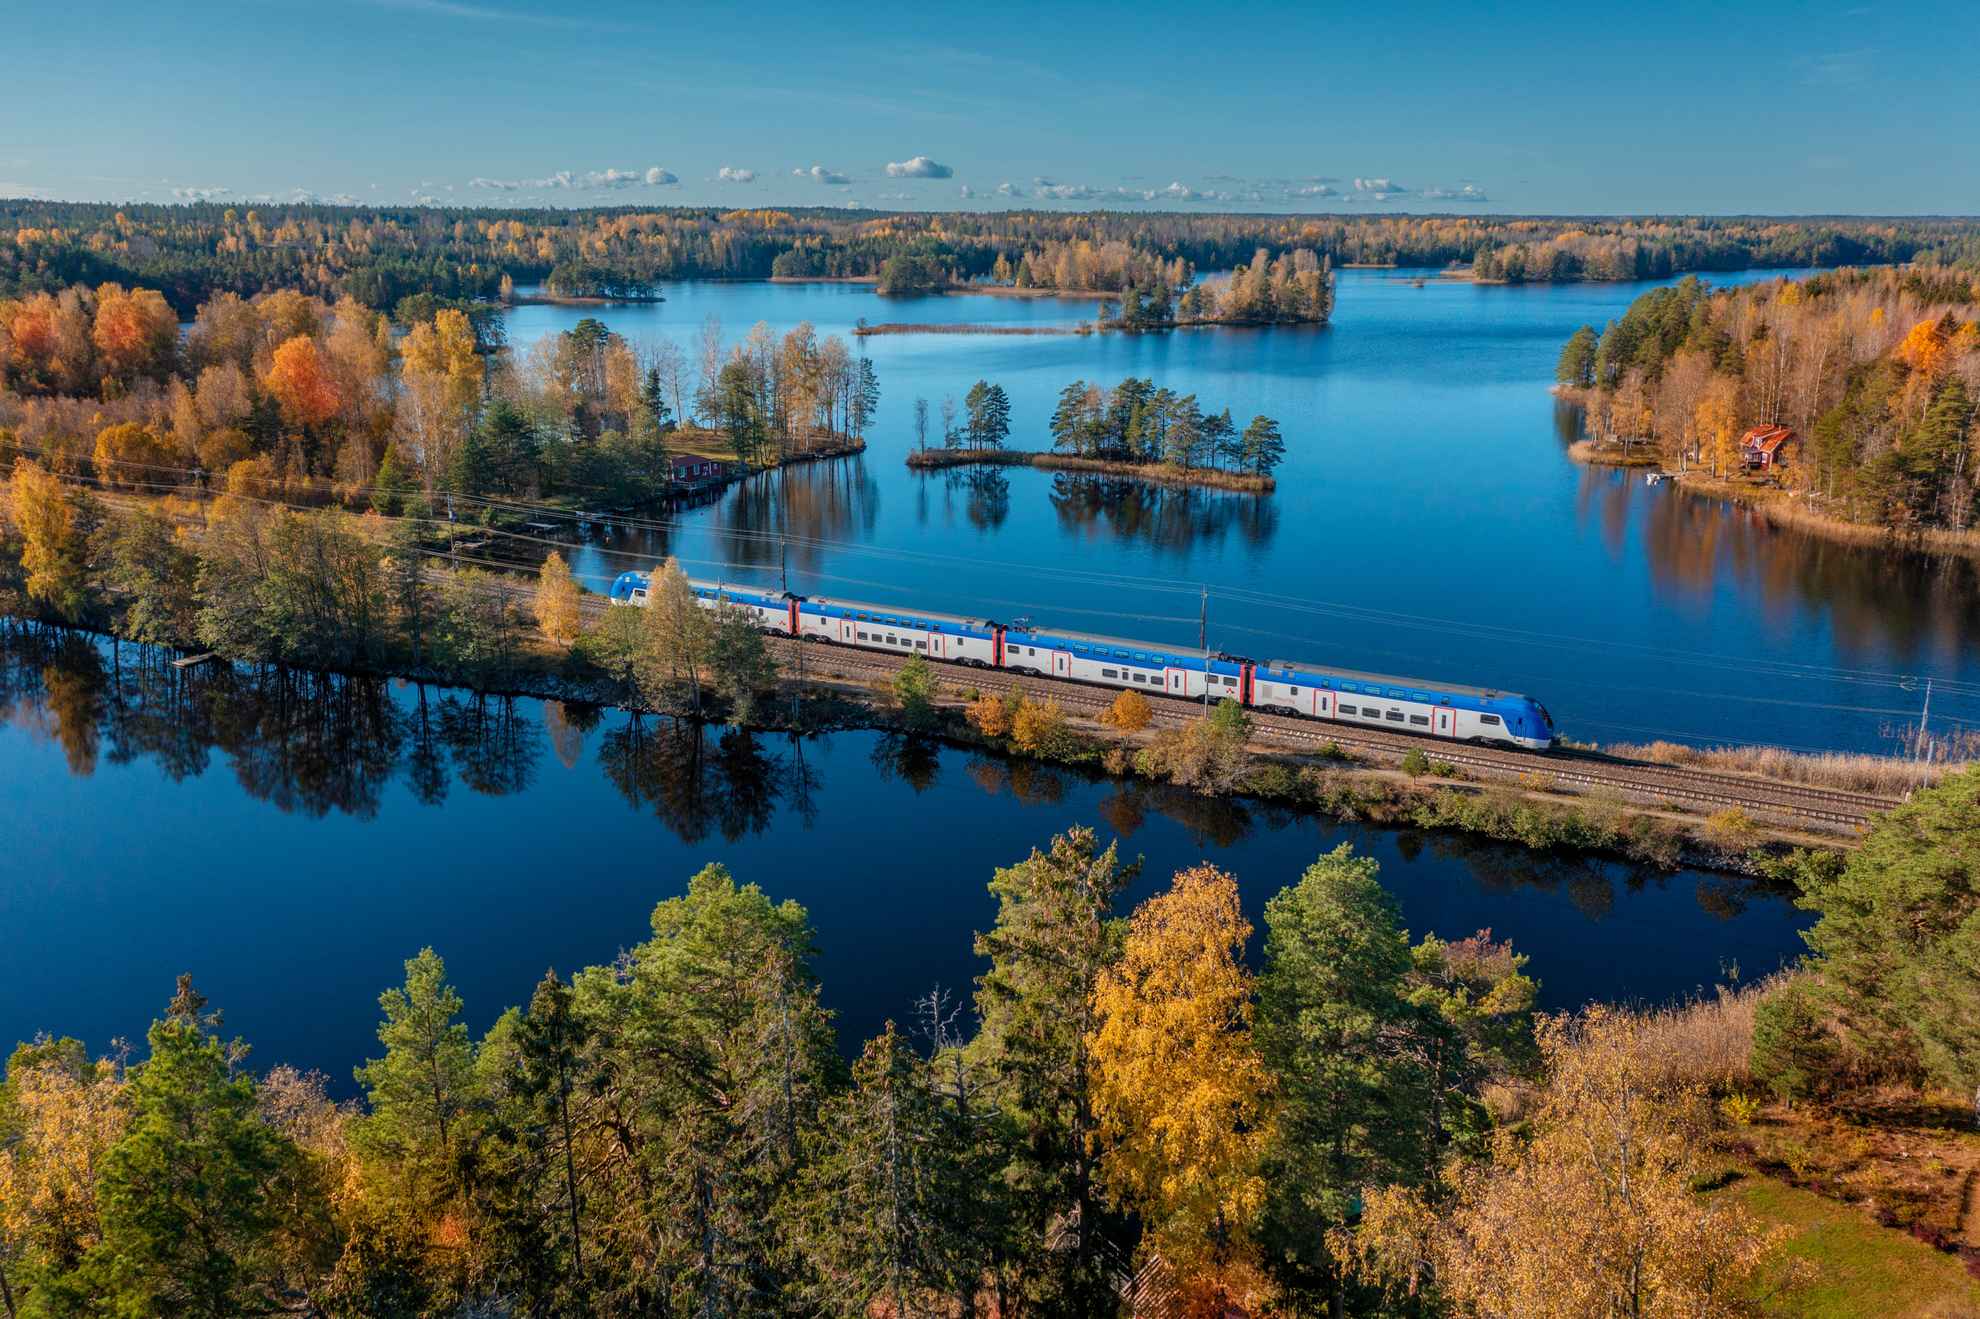 Vue aérienne d'un train traversant un paysage de forêt et de lacs en automne.